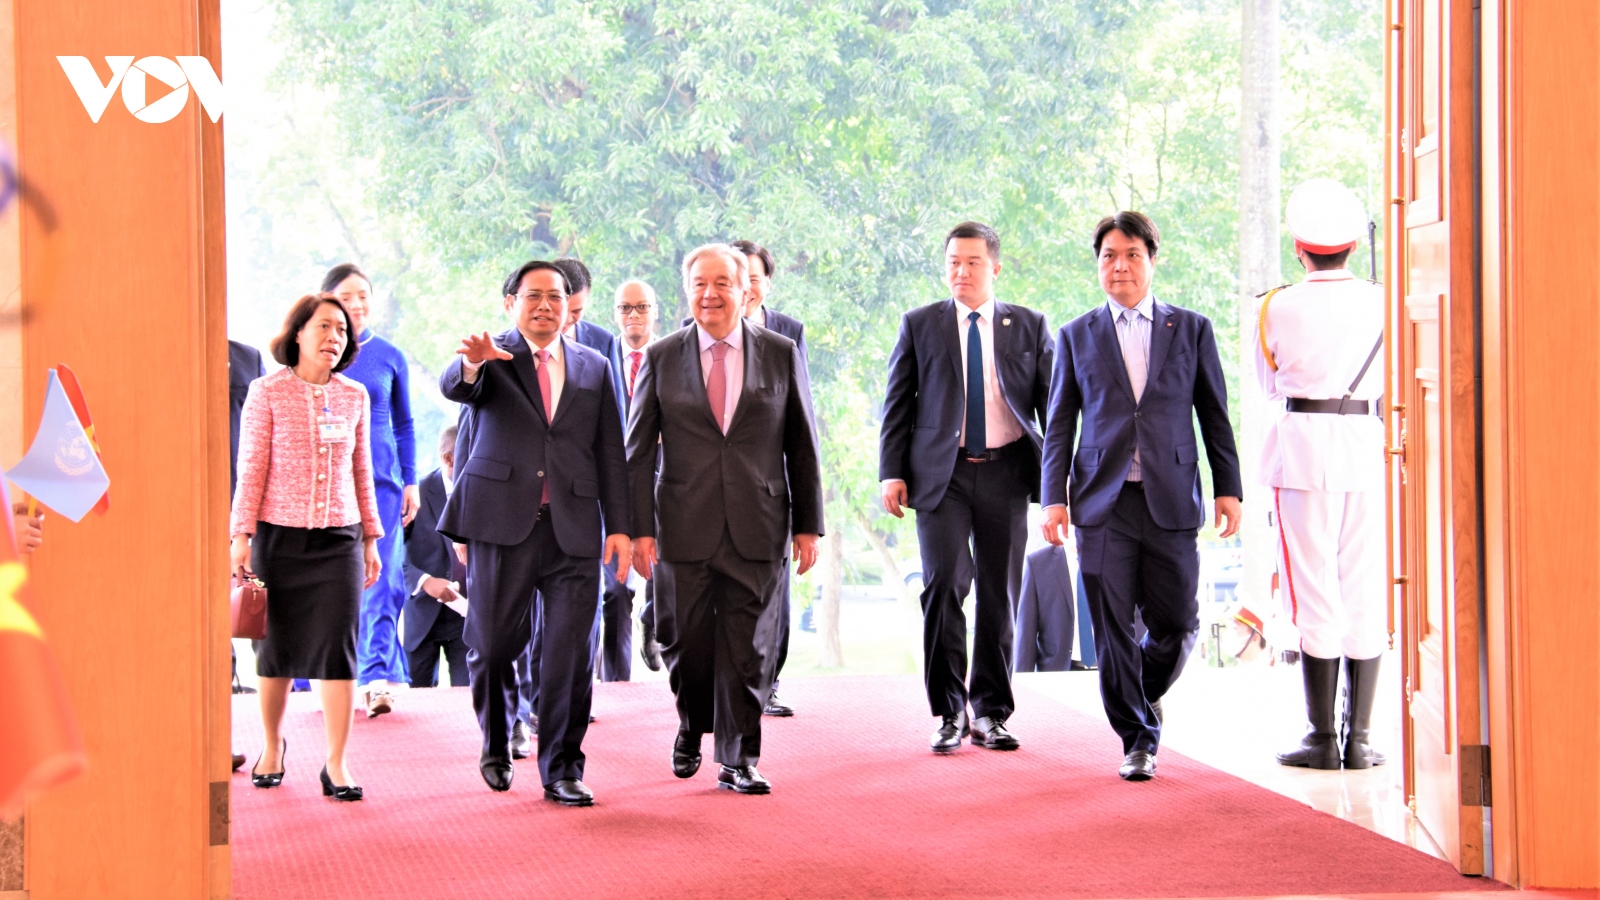 Thủ tướng Chính phủ Phạm Minh Chính tiếp Tổng Thư ký Liên hợp quốc Antonio Guterres